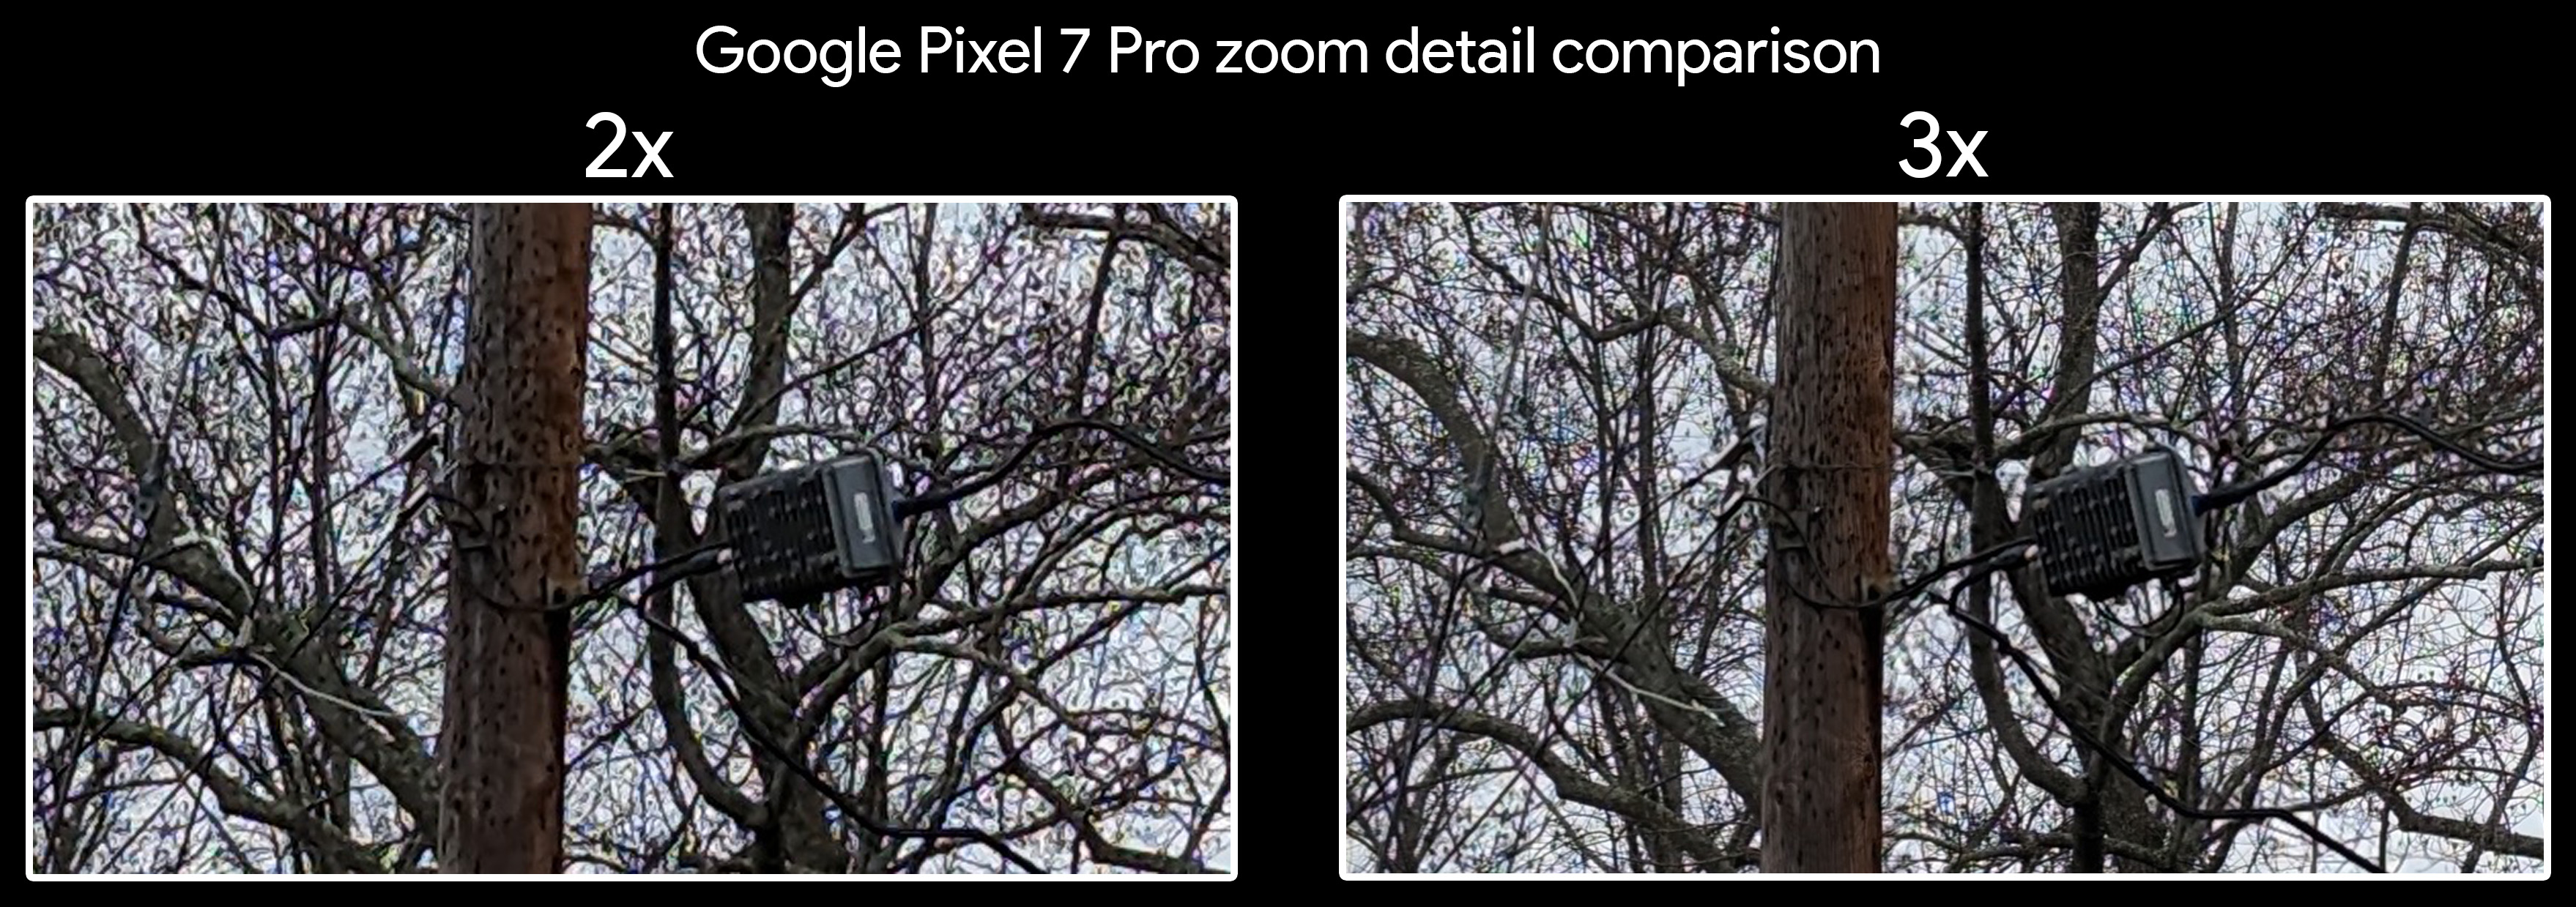 Comparando detalhes de zoom de 2x e 3x em um Google Pixel 7 Pro